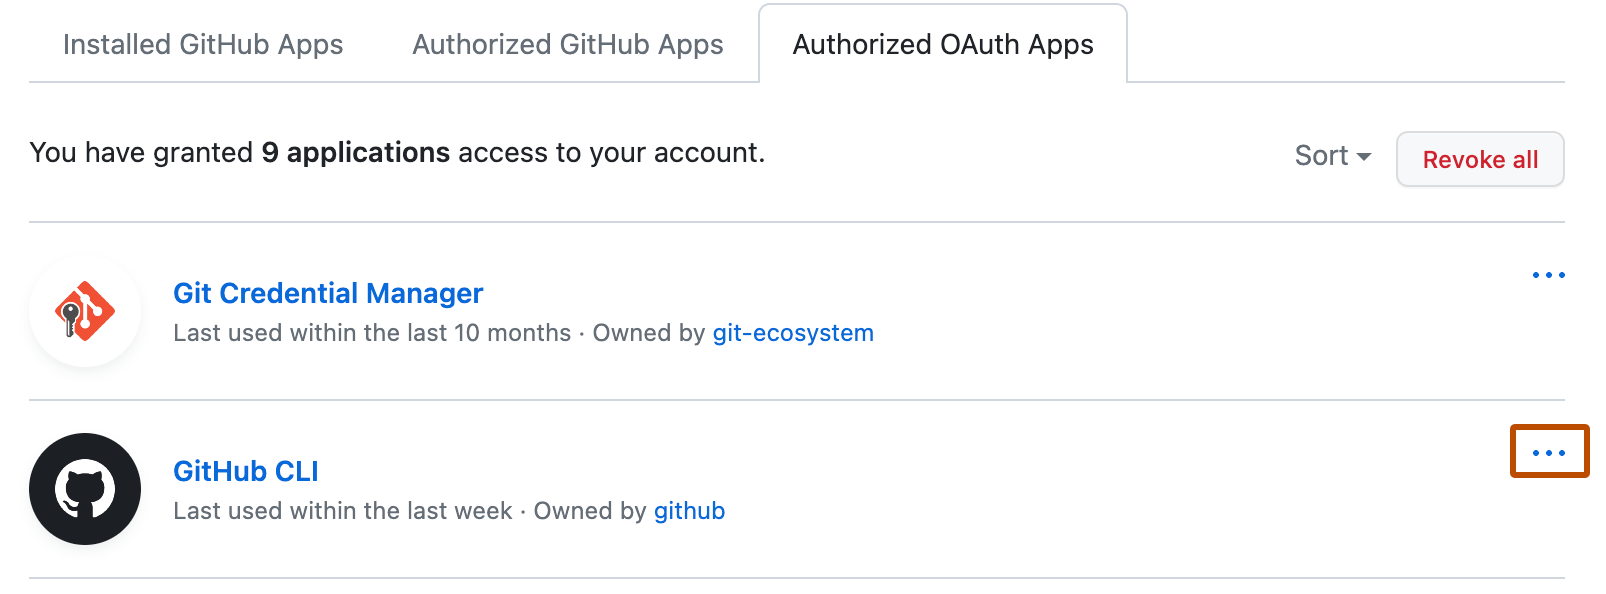 Lista de Aplicativos OAuth autorizado